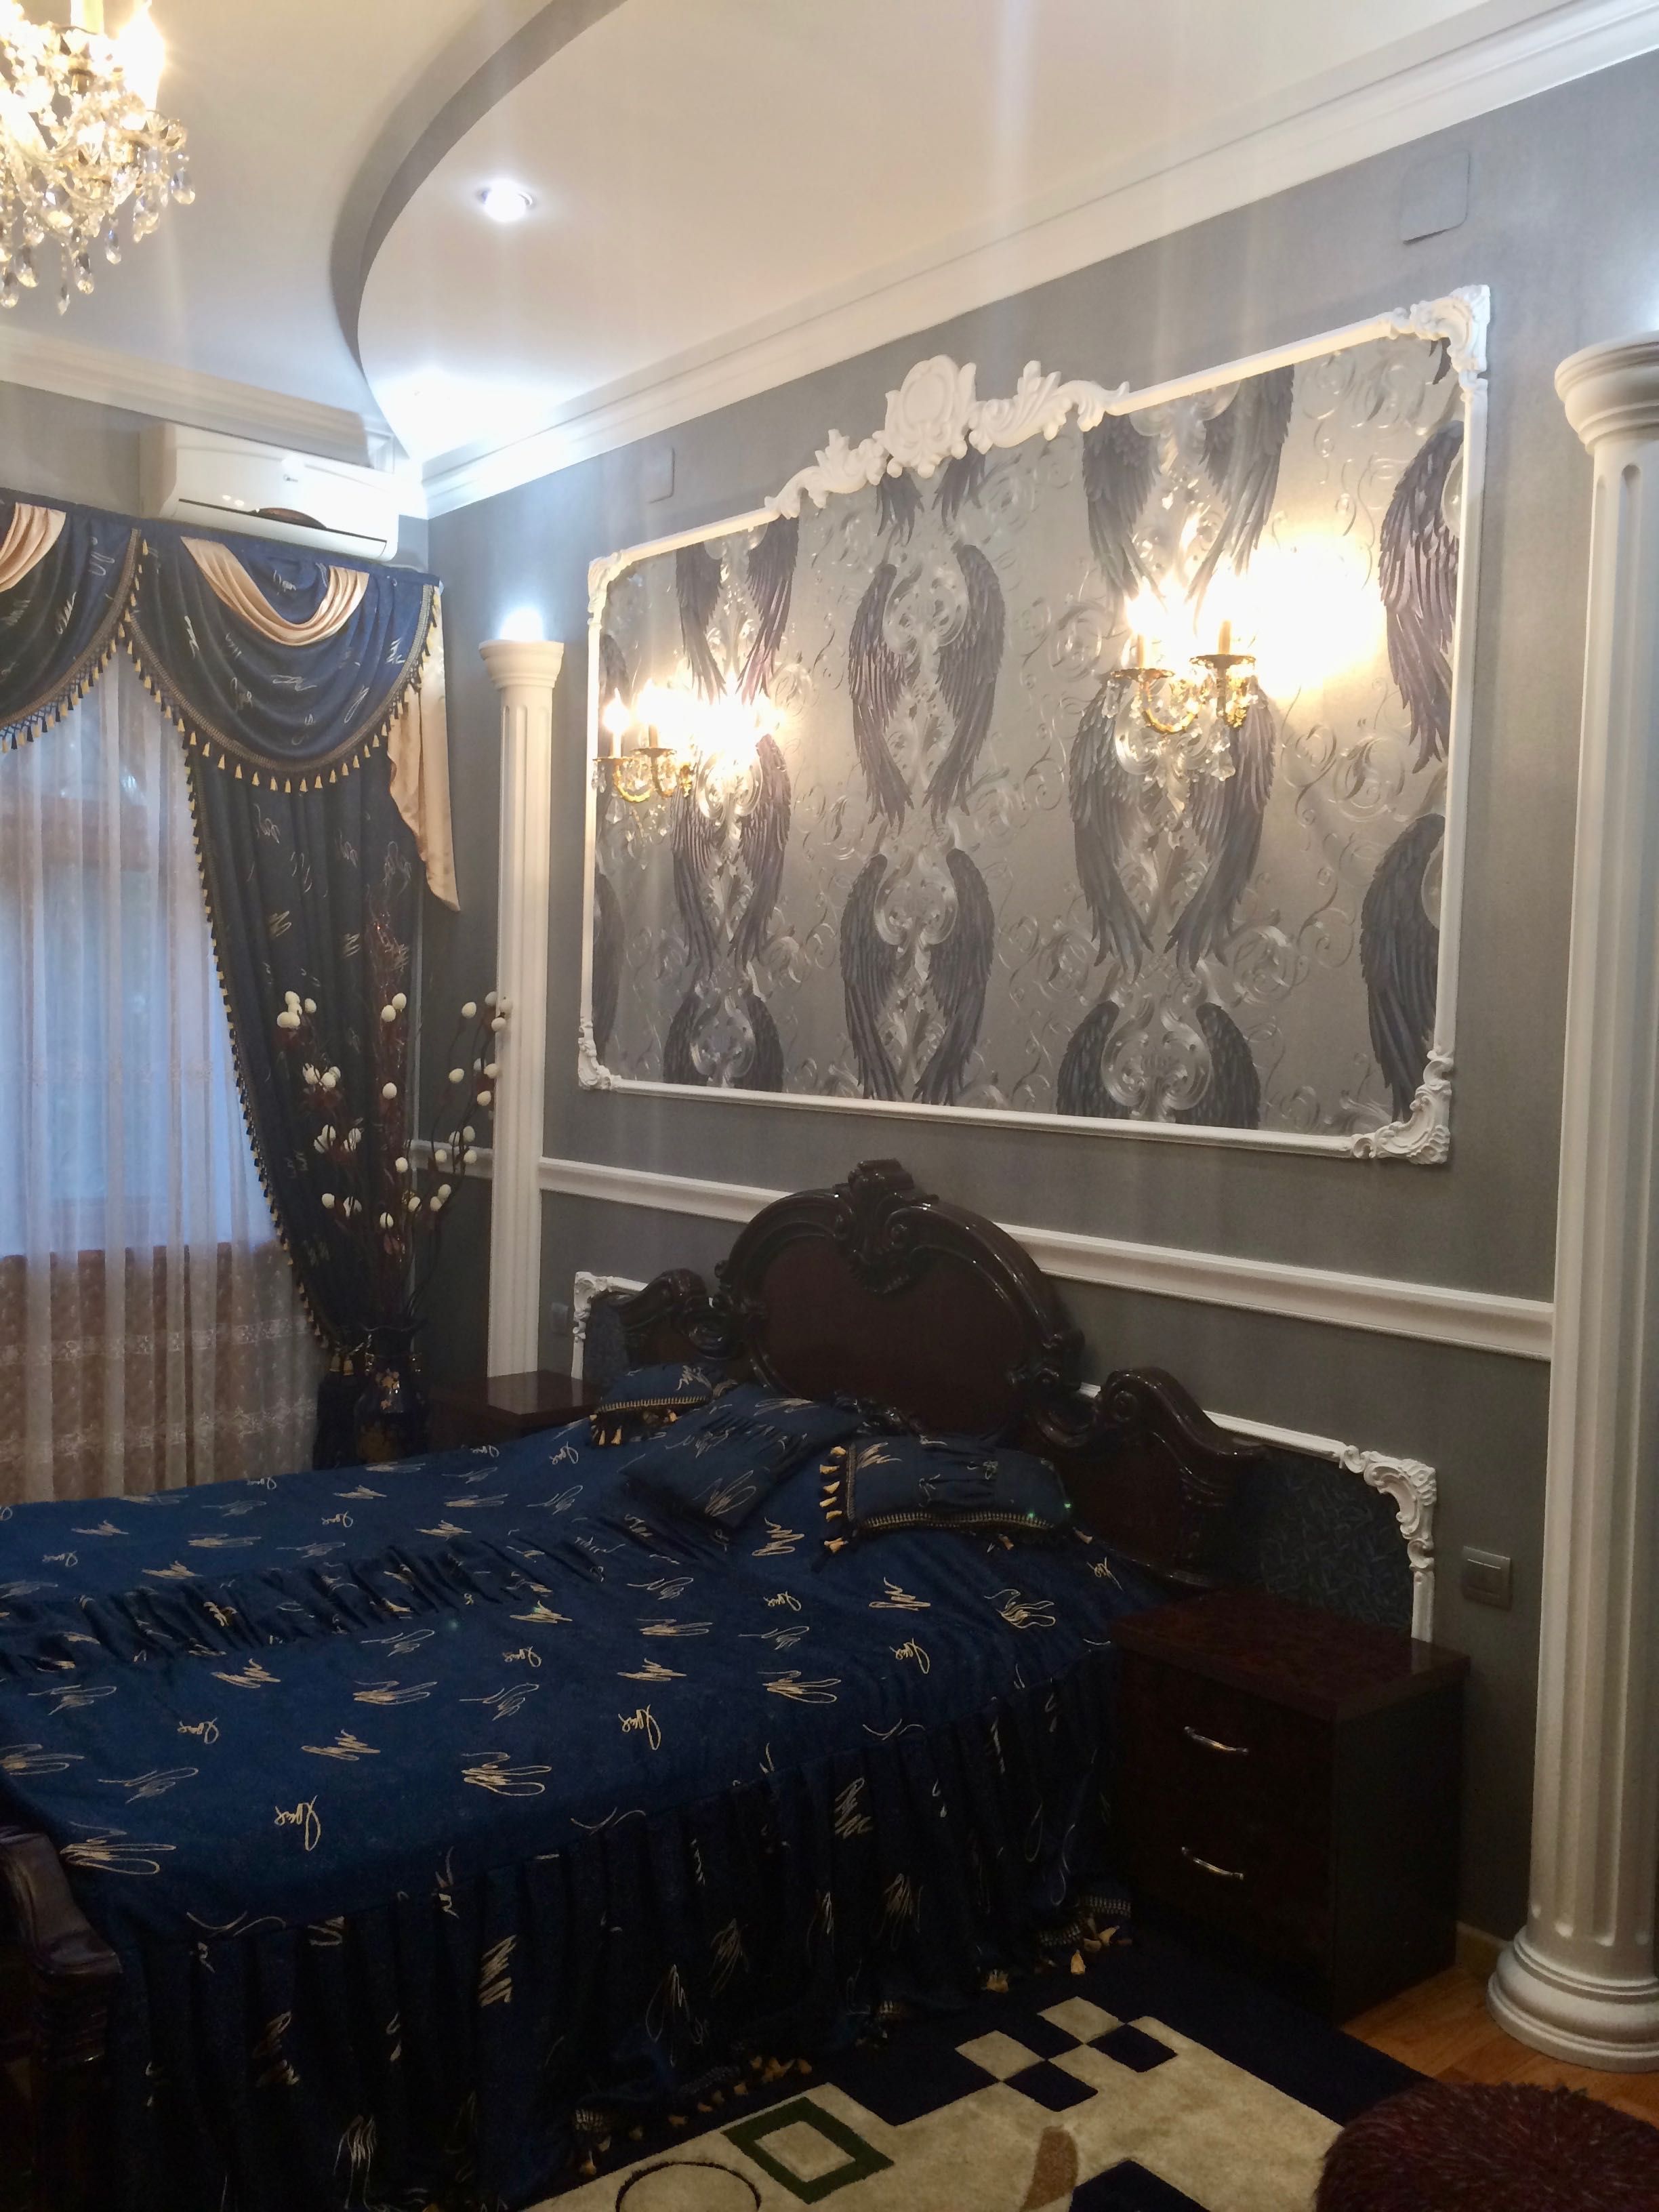 Продается собственная роскошная квартира с евроремонтом в «Сталинке»!